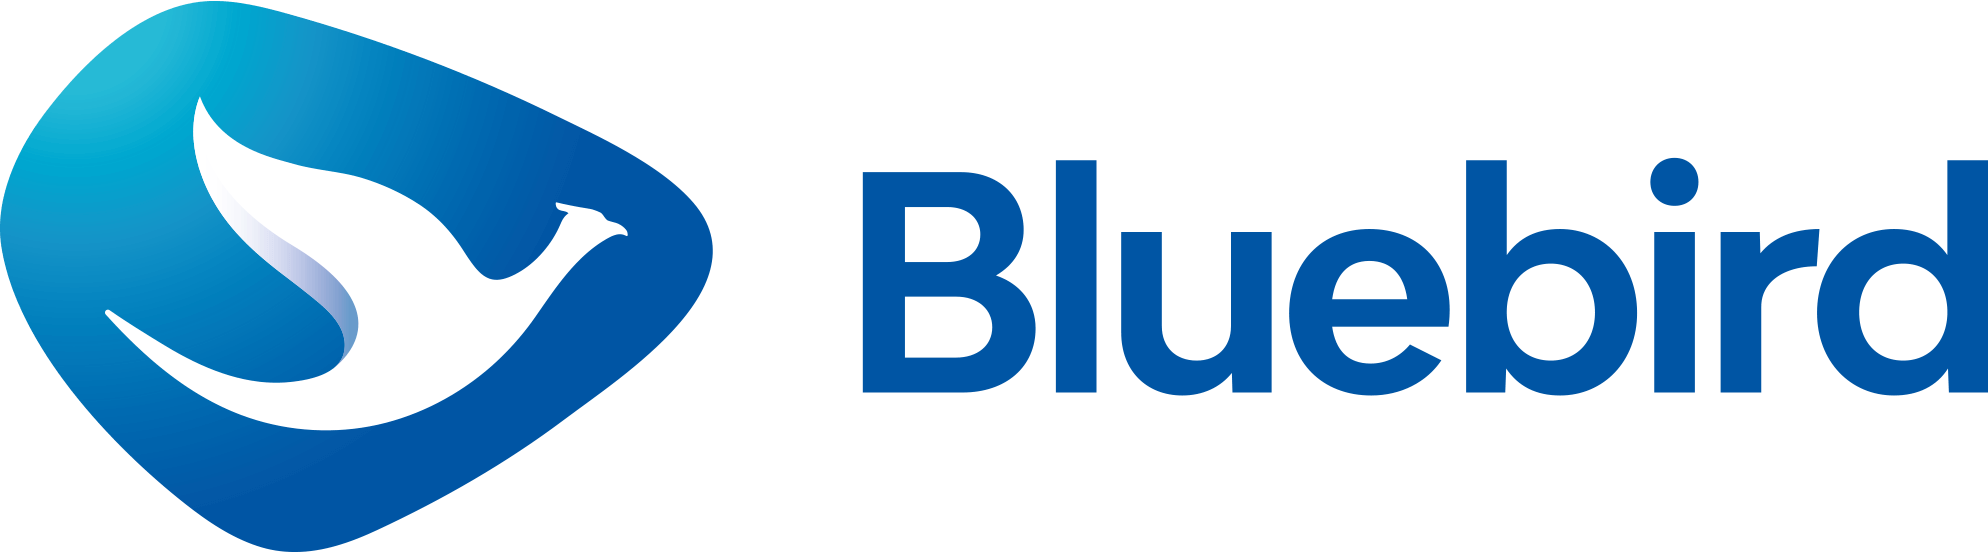 Blue Bird Logo - Bluebird – Blue Bird Taxi Promo Indonesia | BlueBird